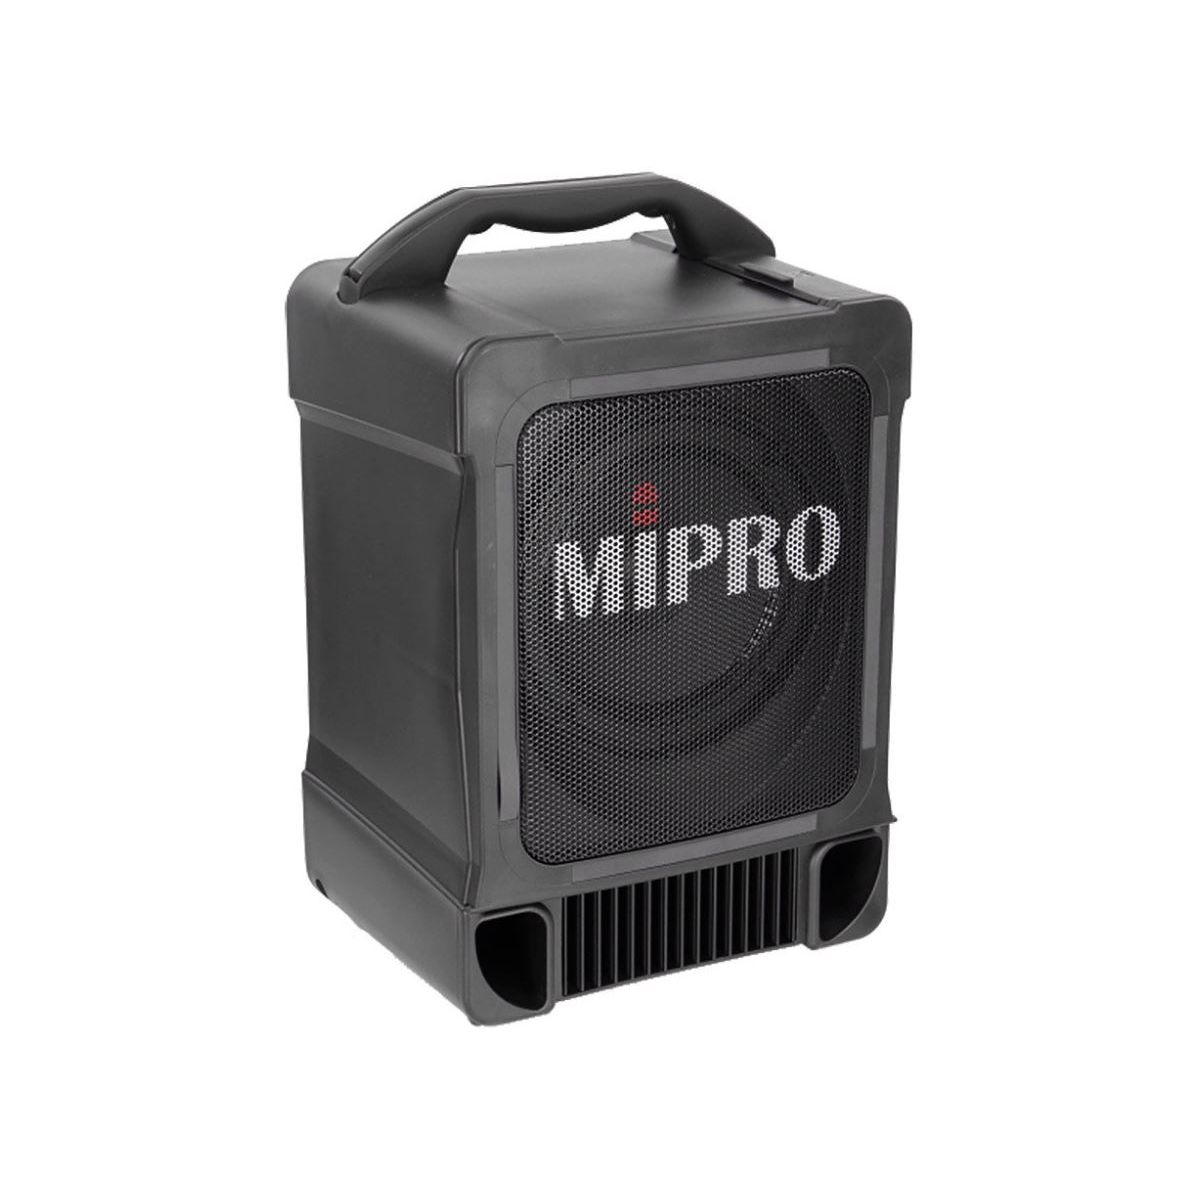 Enceintes passives pour sonos portables - Mipro - MA 707 EXP